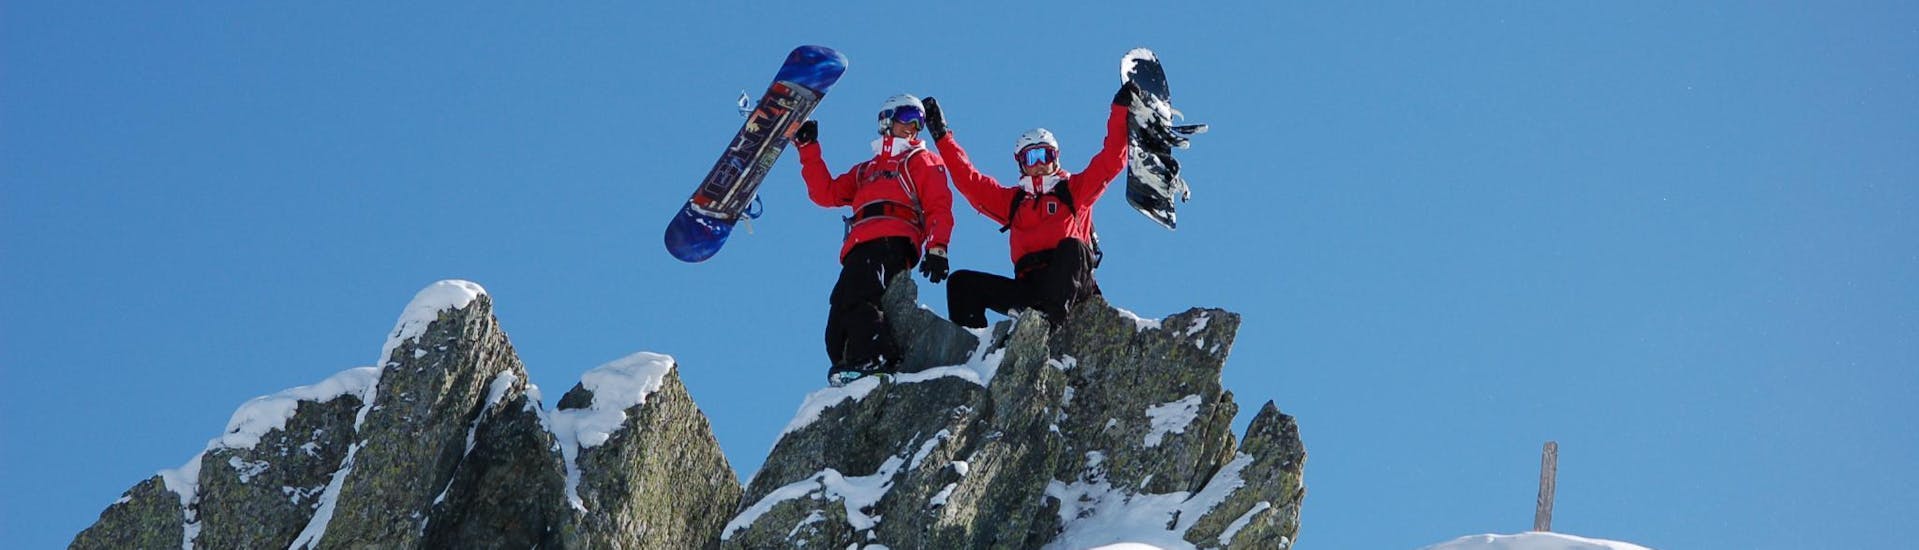 Bij de Snowboardlessen voor kinderen en volwassenen - met ervaring zijn twee snowboardleraren van de skischool Skischule Kitzbühel Rote Teufel op een rots geklommen en poseren met hun snowboards voor een foto.